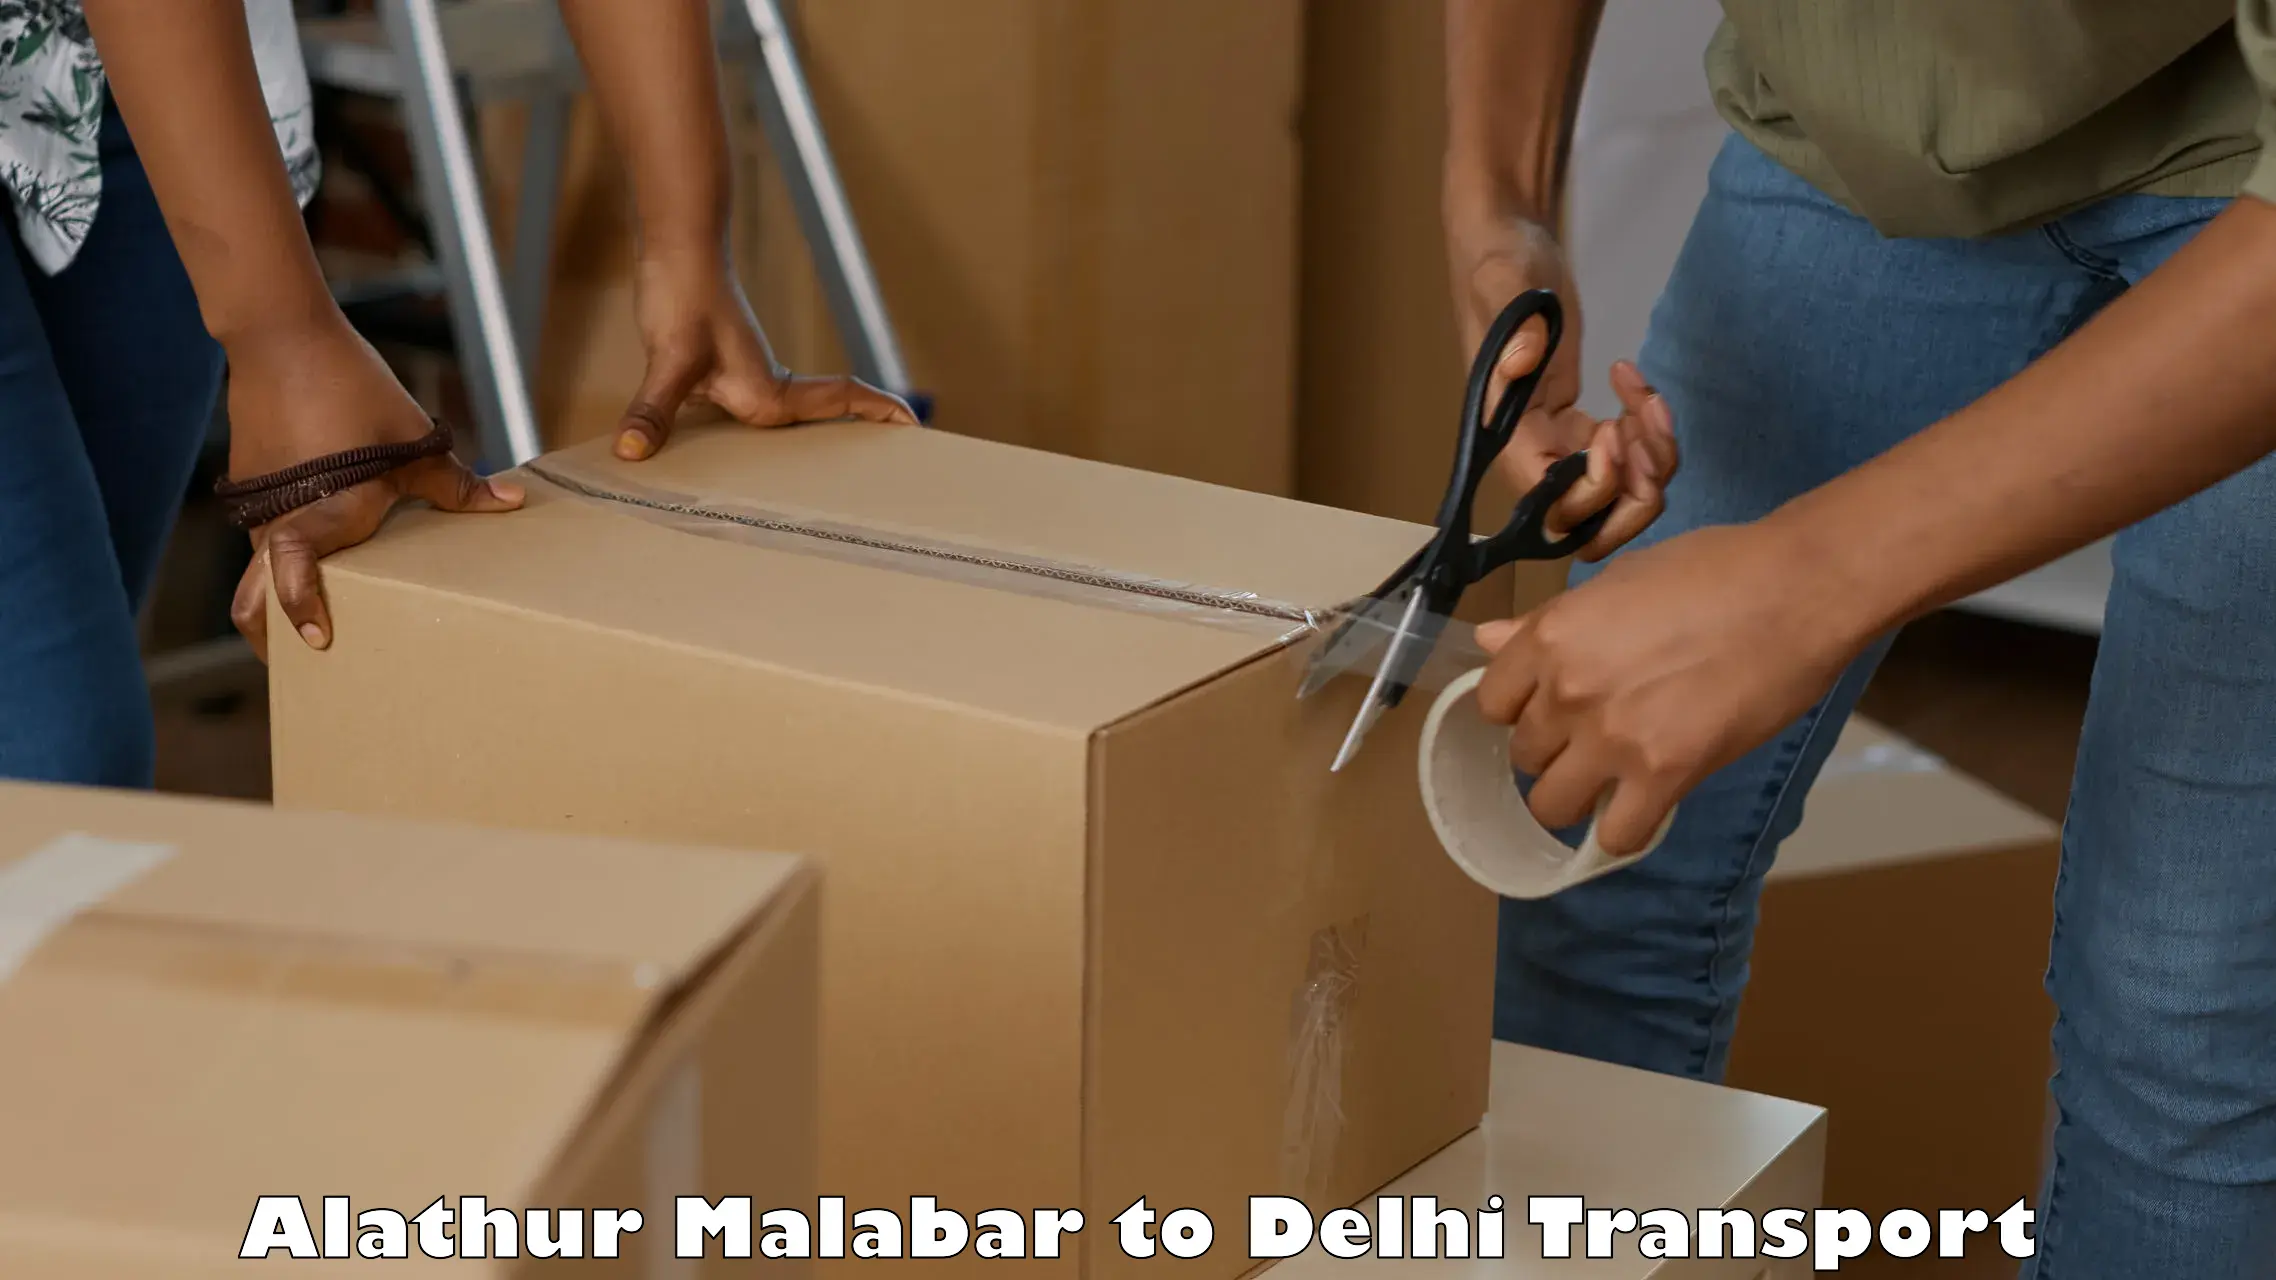 India truck logistics services Alathur Malabar to Burari